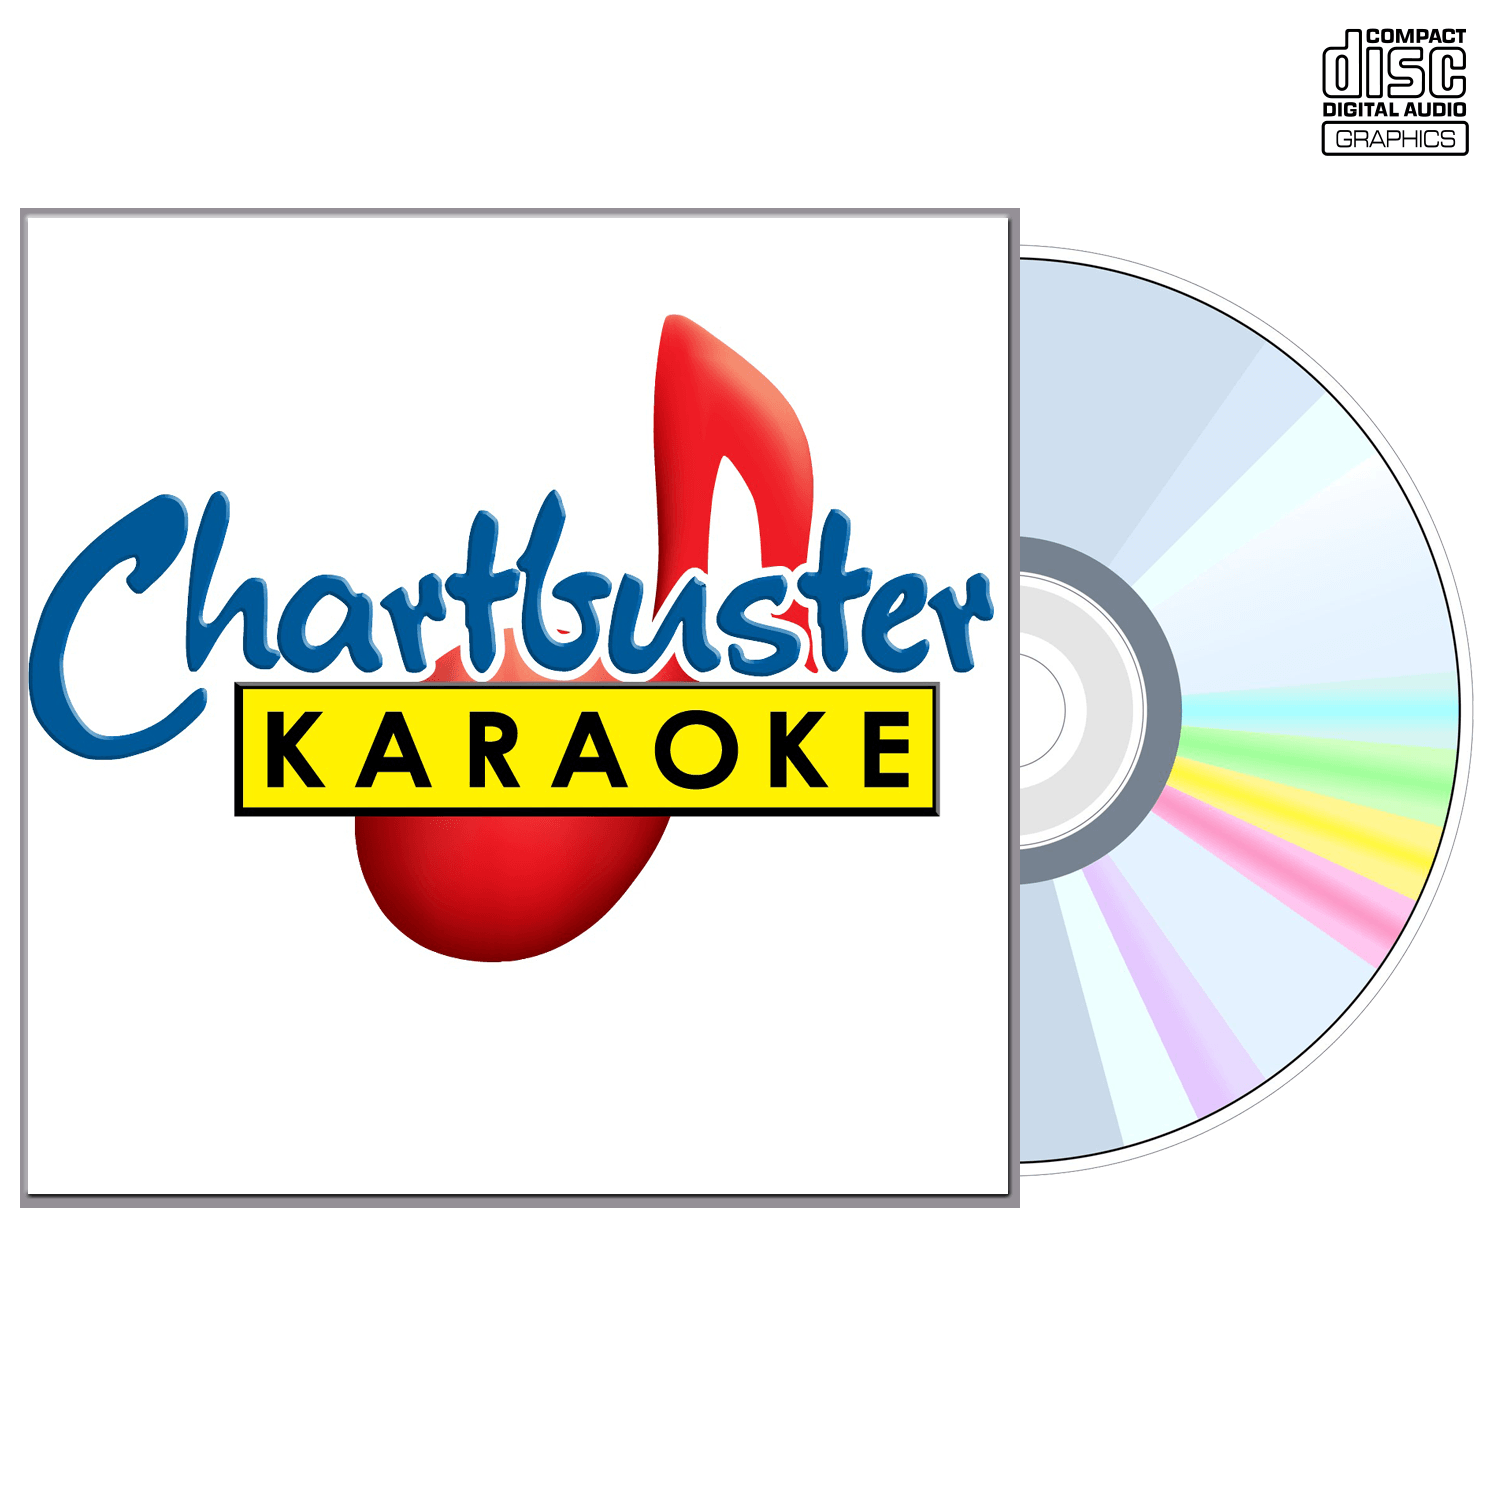 Alanis Morissette - CD+G - Chartbuster Karaoke - Karaoke Home Entertainment